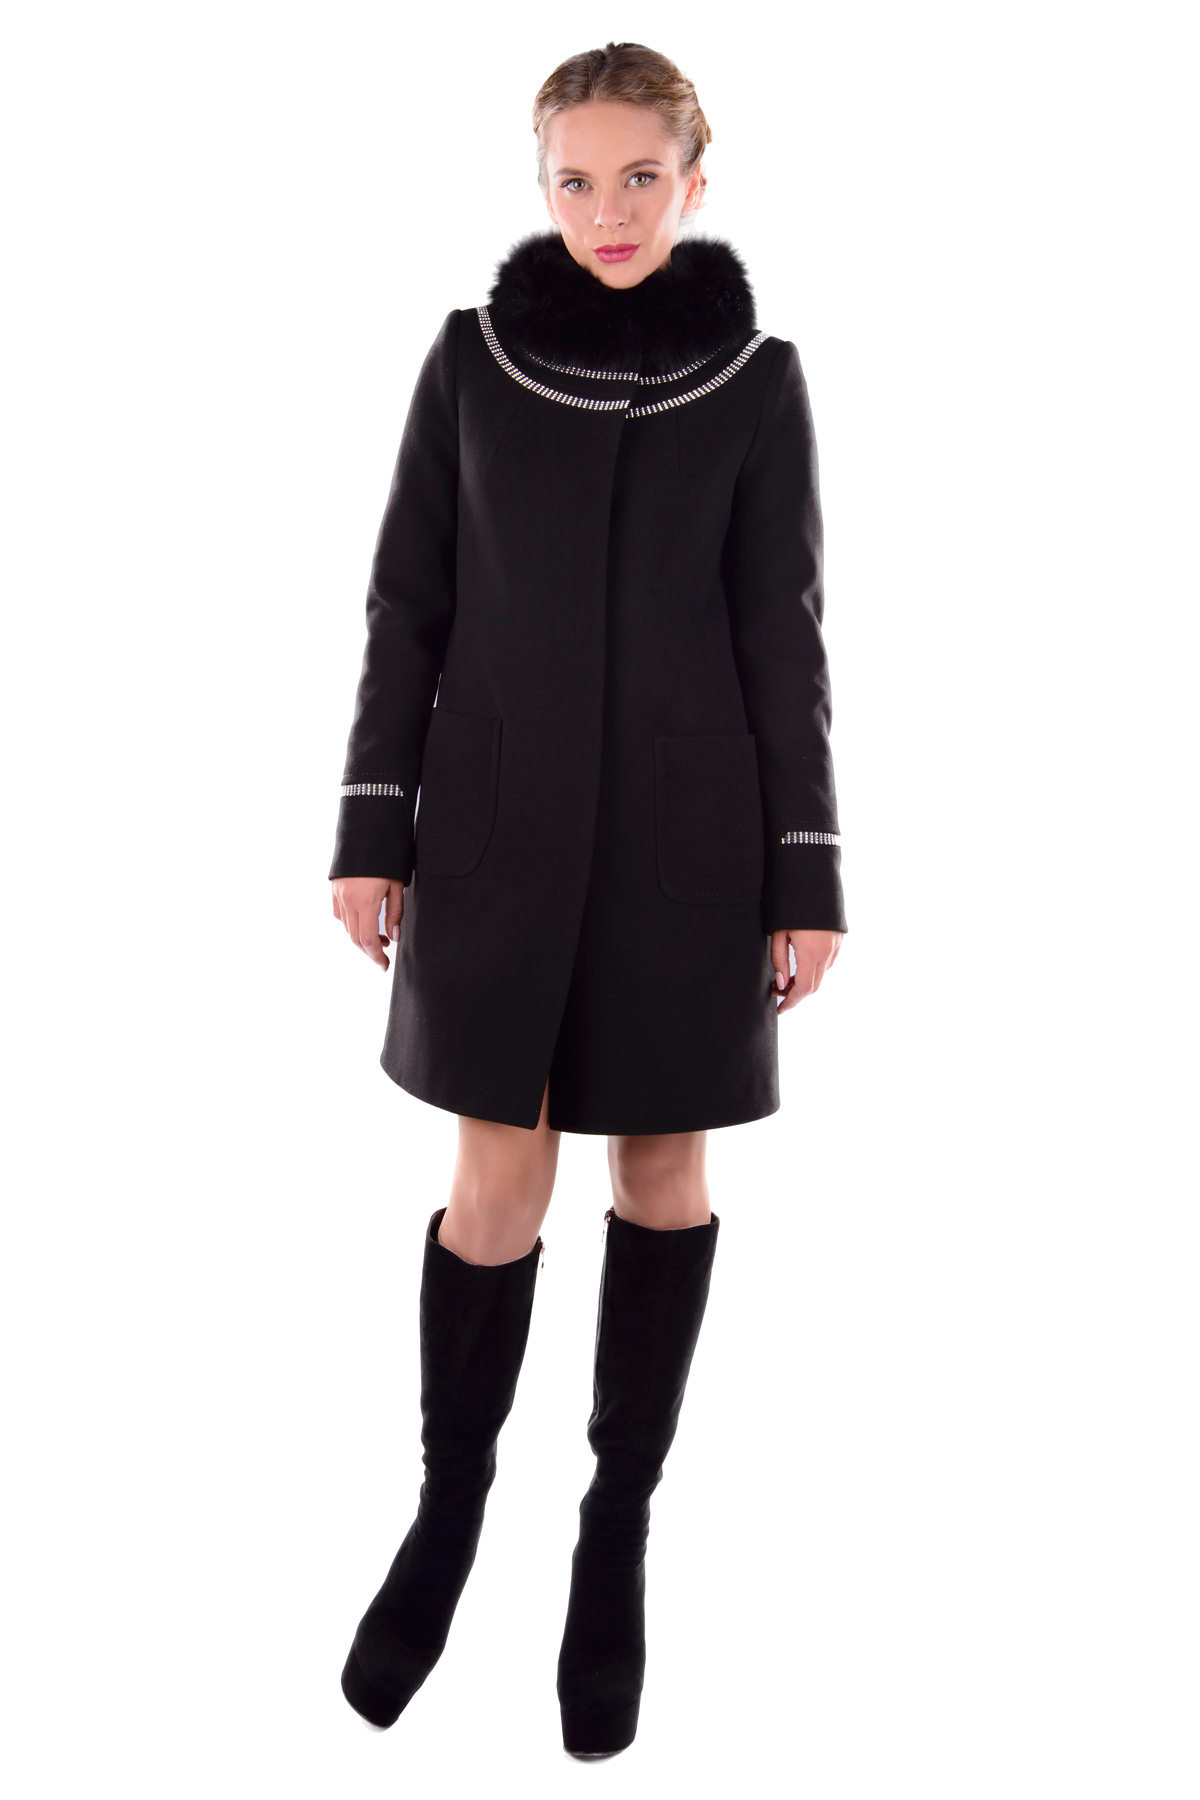 Женское пальто оптом от производителя Modus Пальто Ницца турция элит зима песец